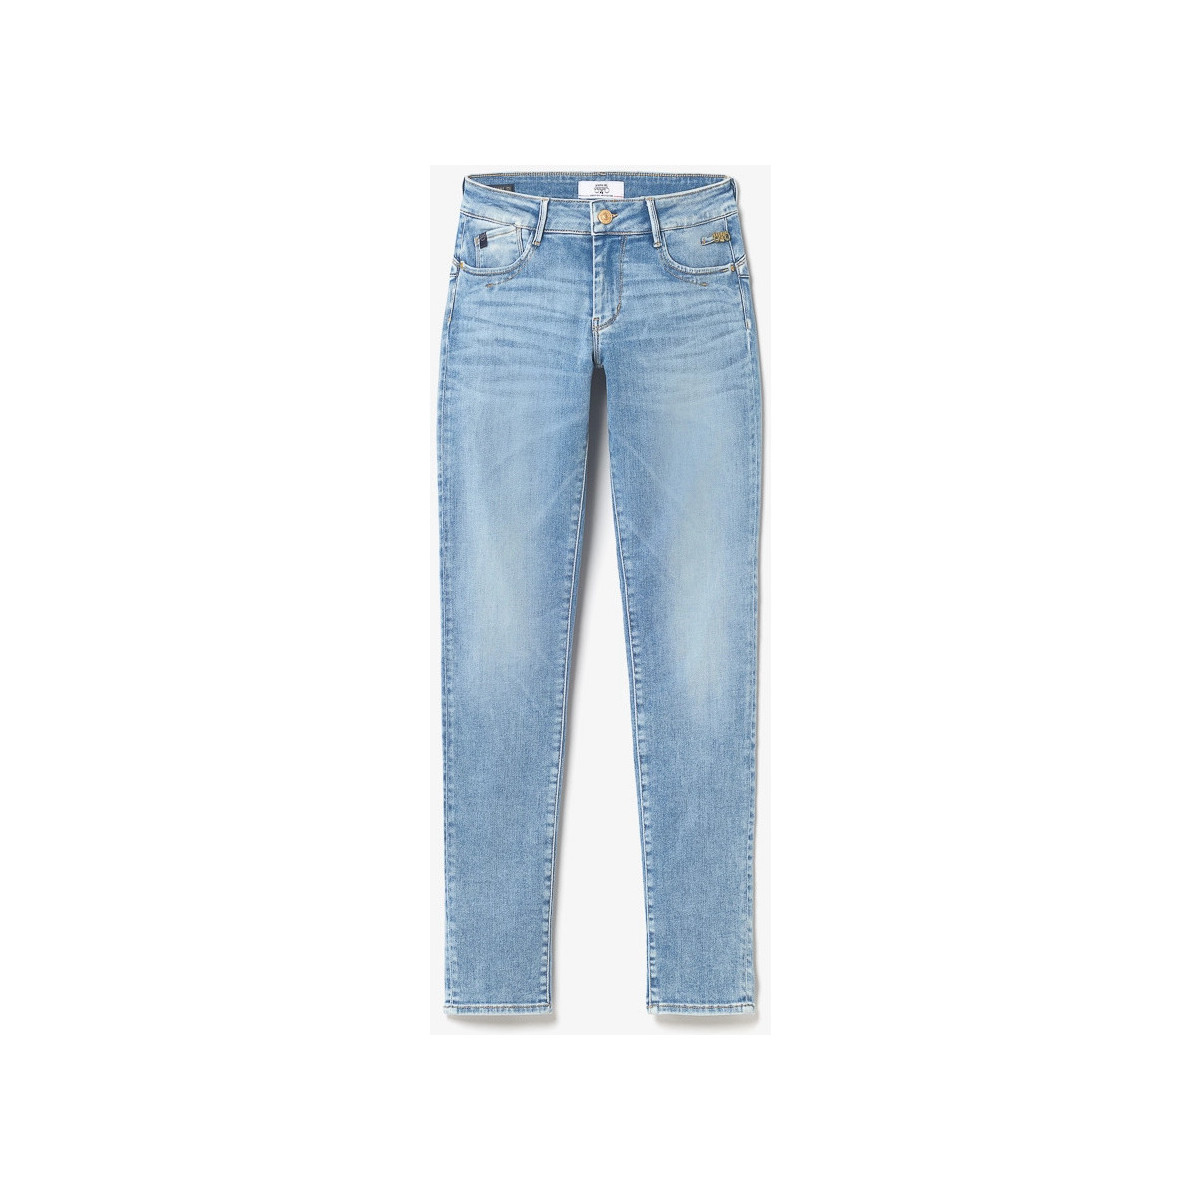 Le Temps des Cerises Bleu Flip pulp slim jeans bleu rgcIZd7P